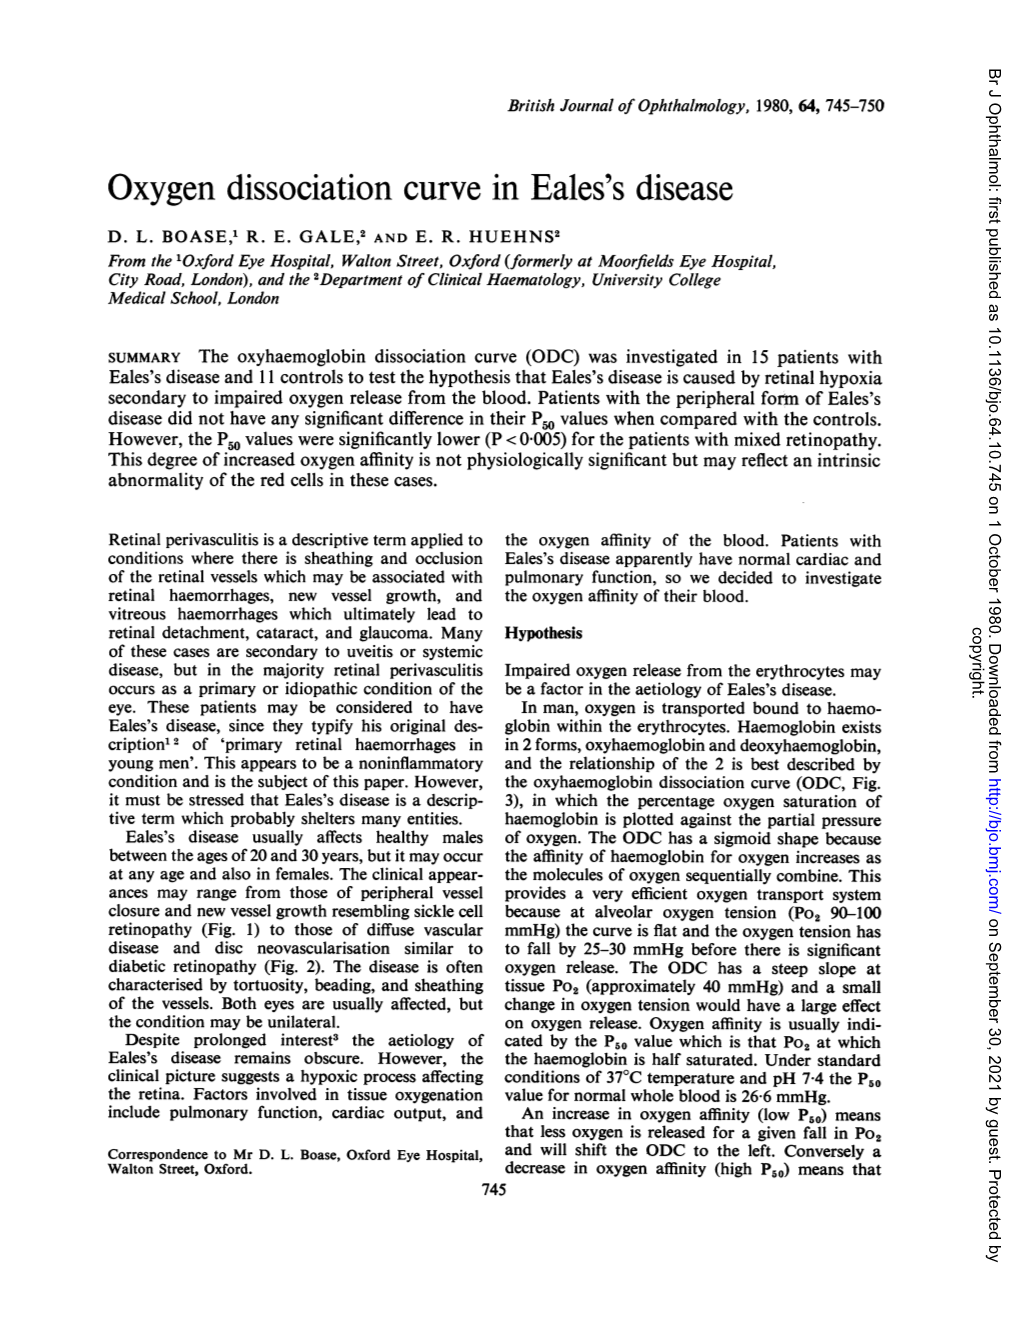 Oxygen Dissociation Curve in Eales's Disease